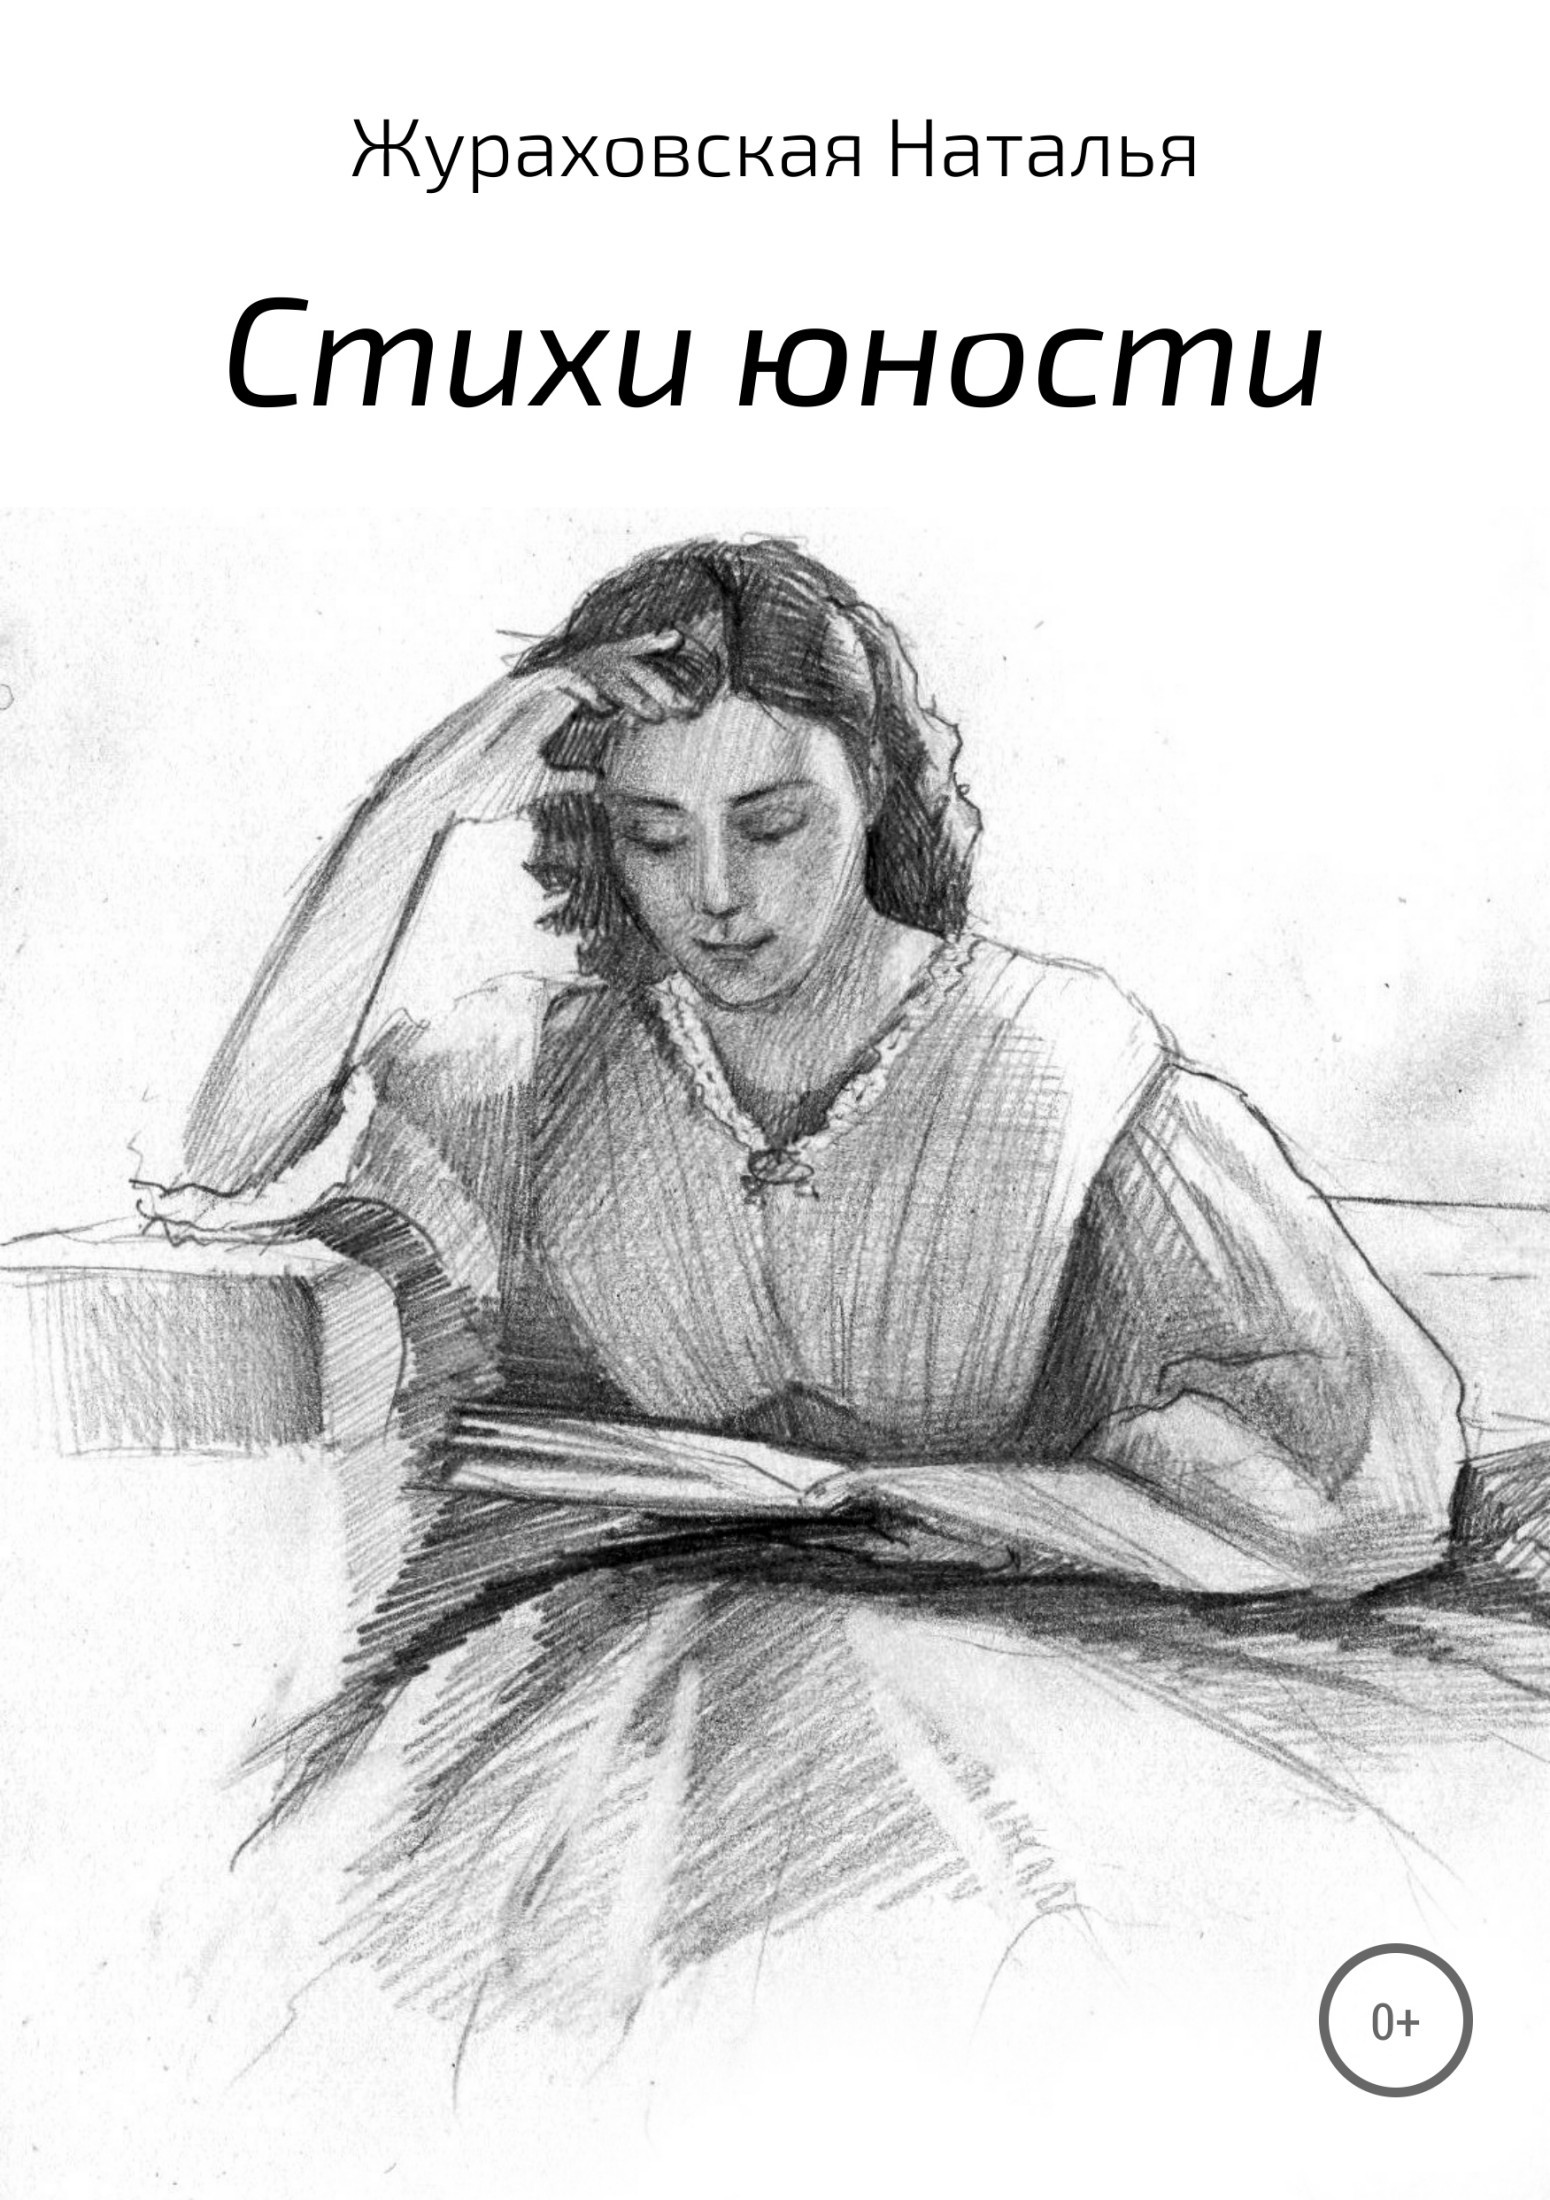 Наталья Владимировна Жураховская бесплатно